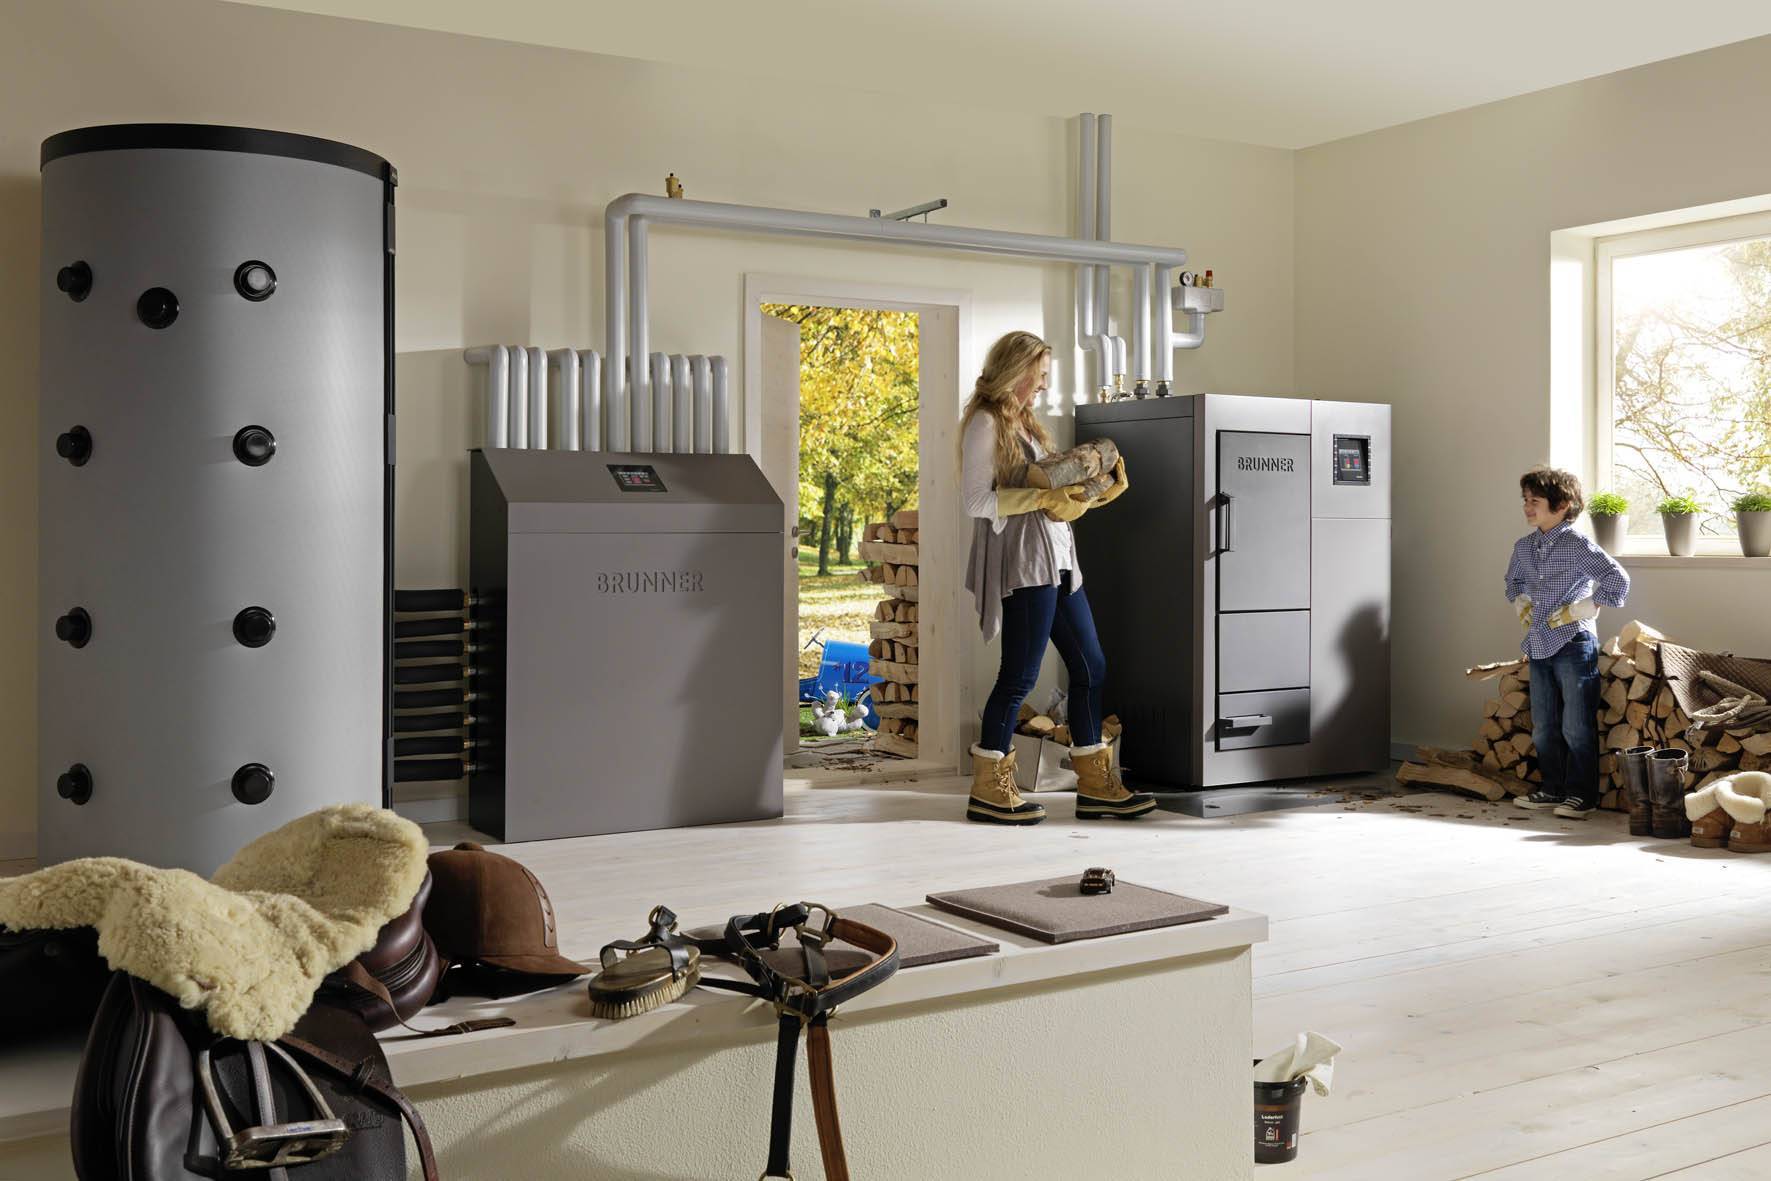 Как выбрать газовый котел для отопления частного дома: виды устройств с описанием, обзор популярных моделей и отзывы покупателей